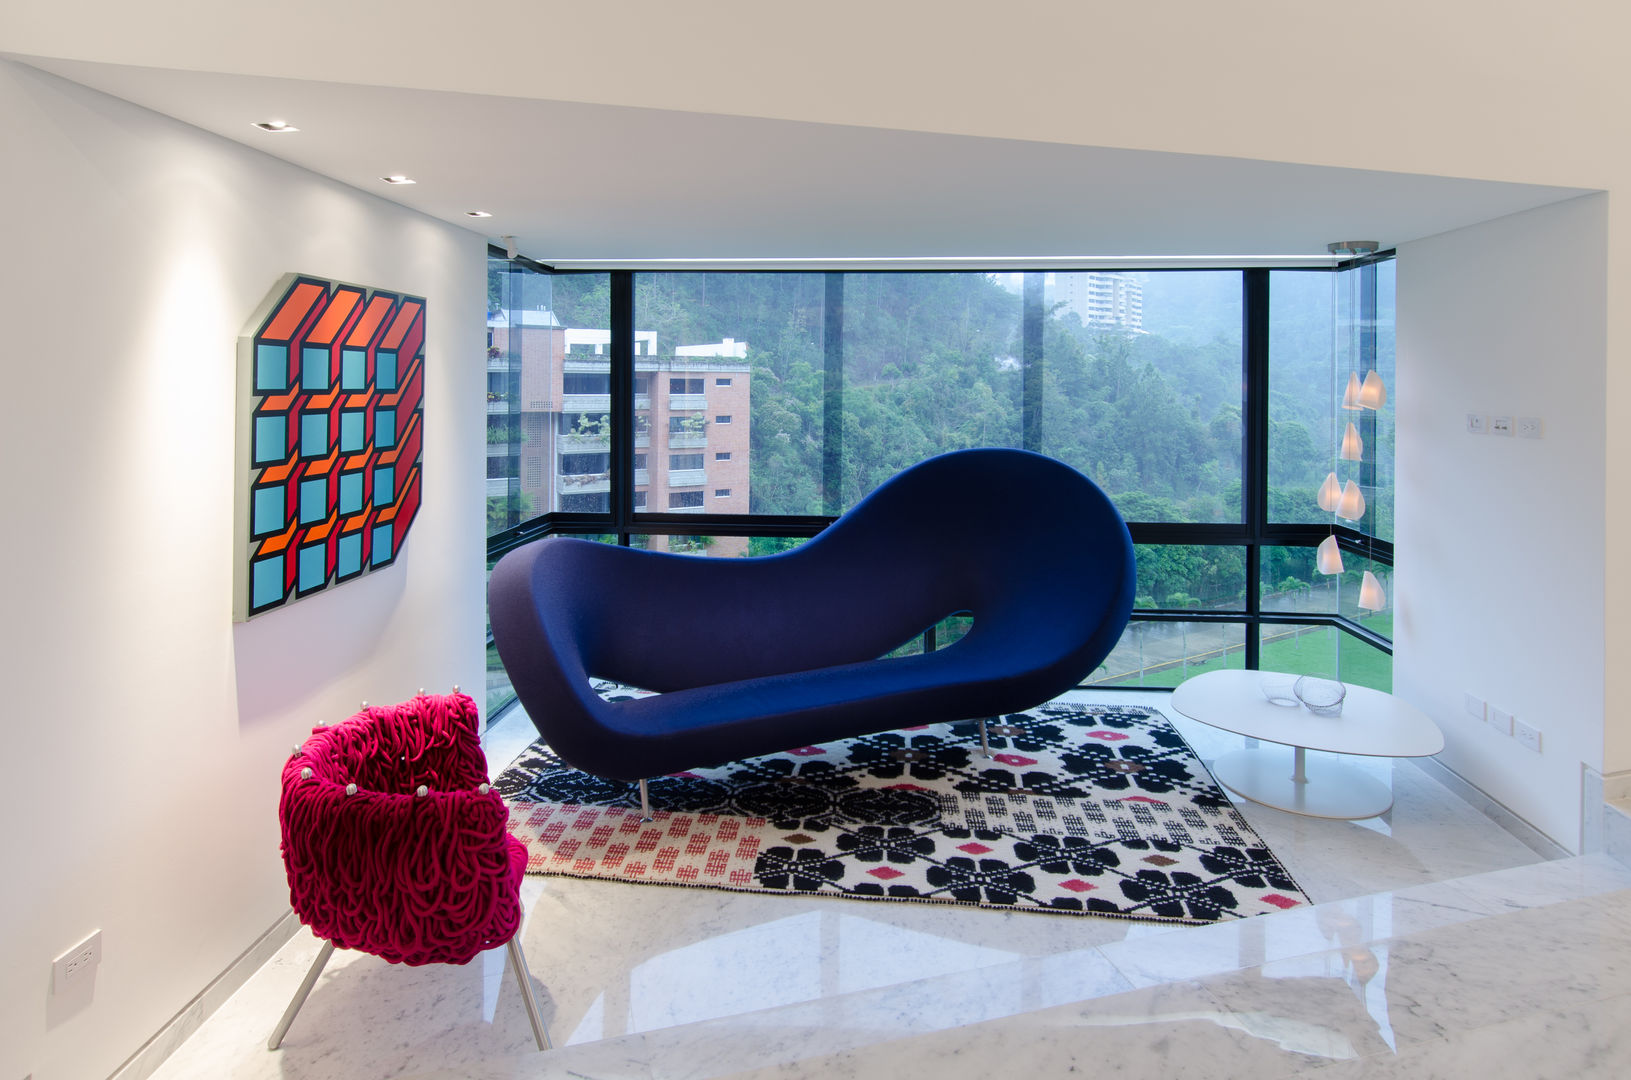 La Lagunita, Design Group Latinamerica Design Group Latinamerica Moderne woonkamers Sofa's & fauteuils